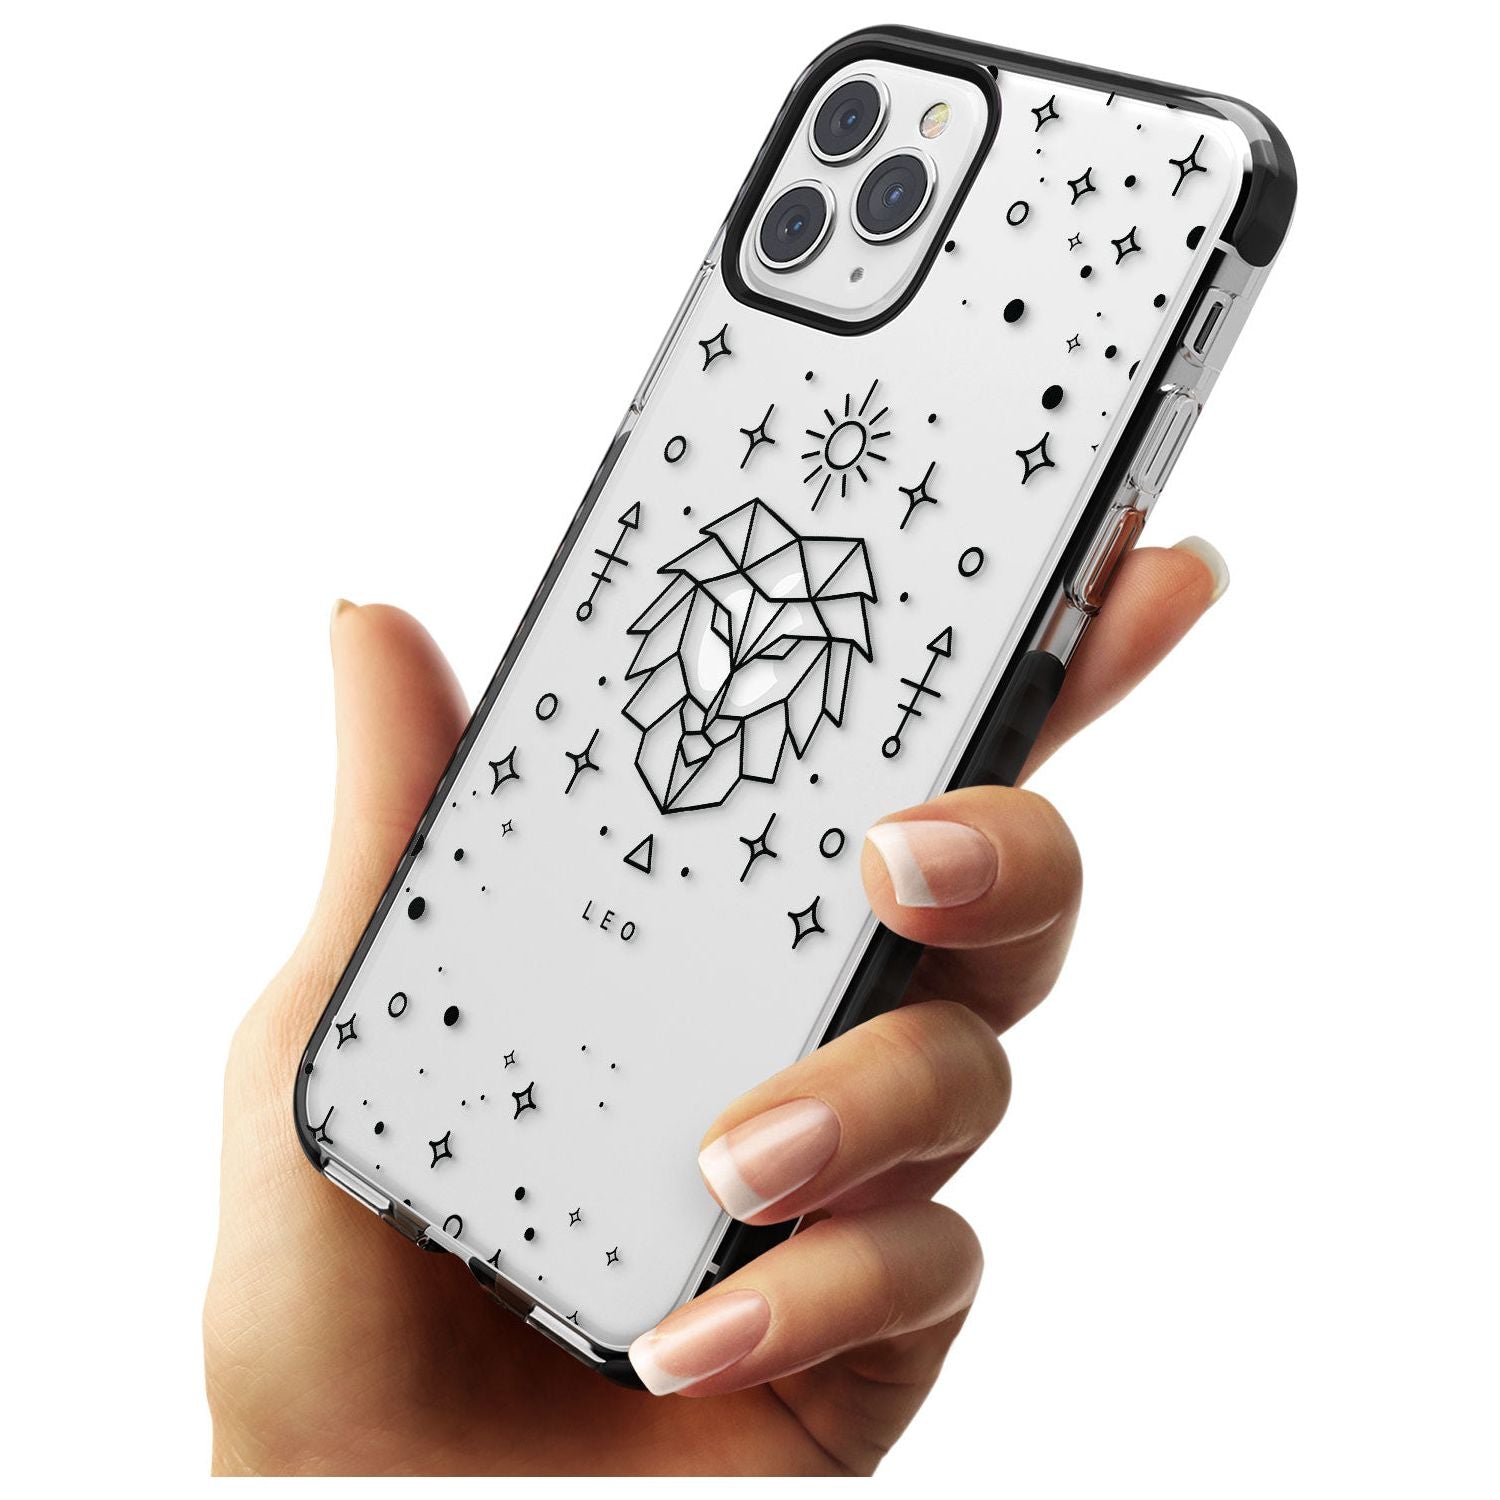 Leo Emblem - Transparent Design Black Impact Phone Case for iPhone 11 Pro Max